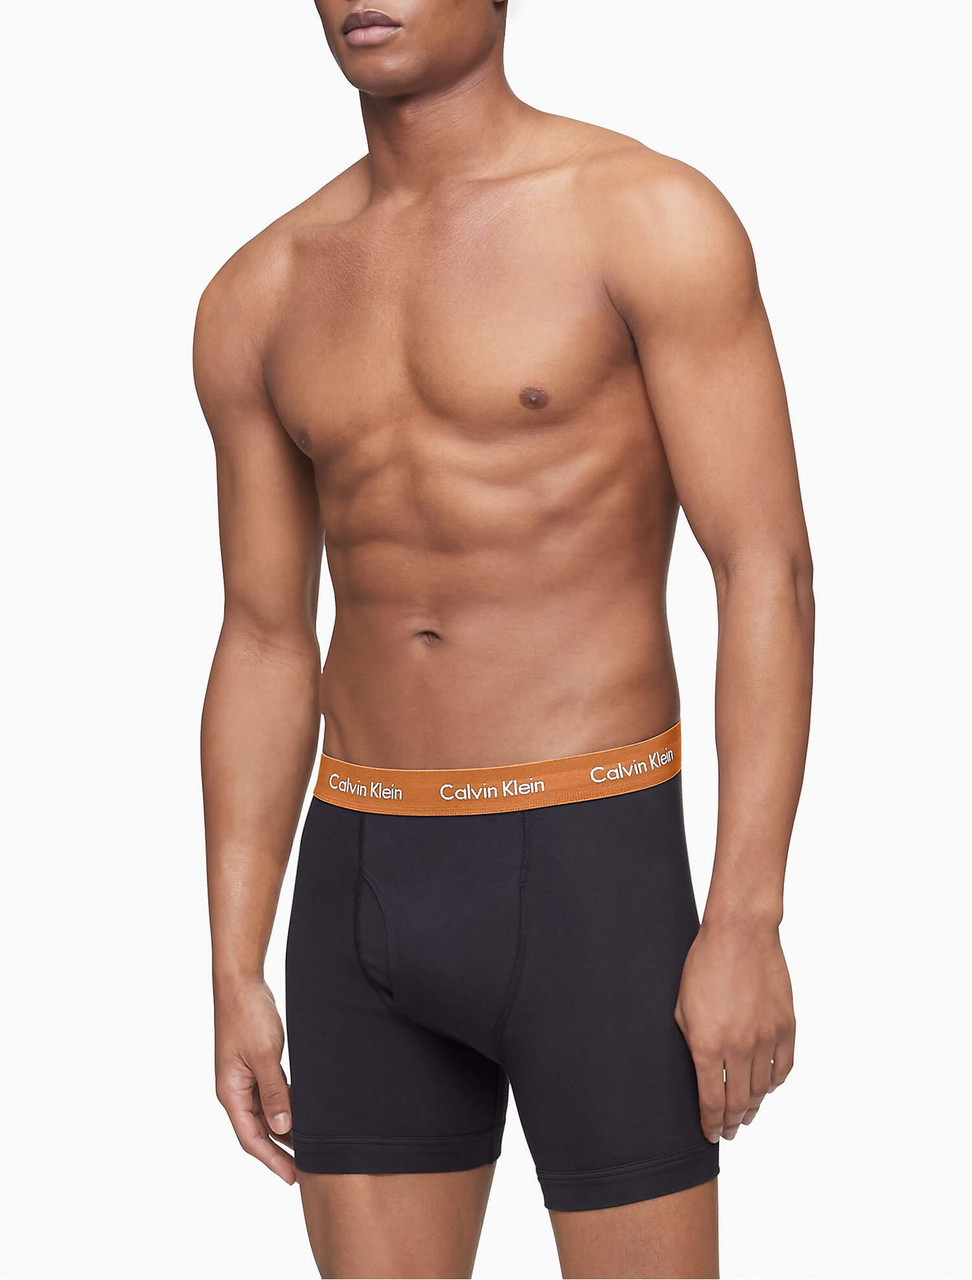 Calvin Klein Men's 3-Pack Cotton Stretch Briefs Underwear - Macy's